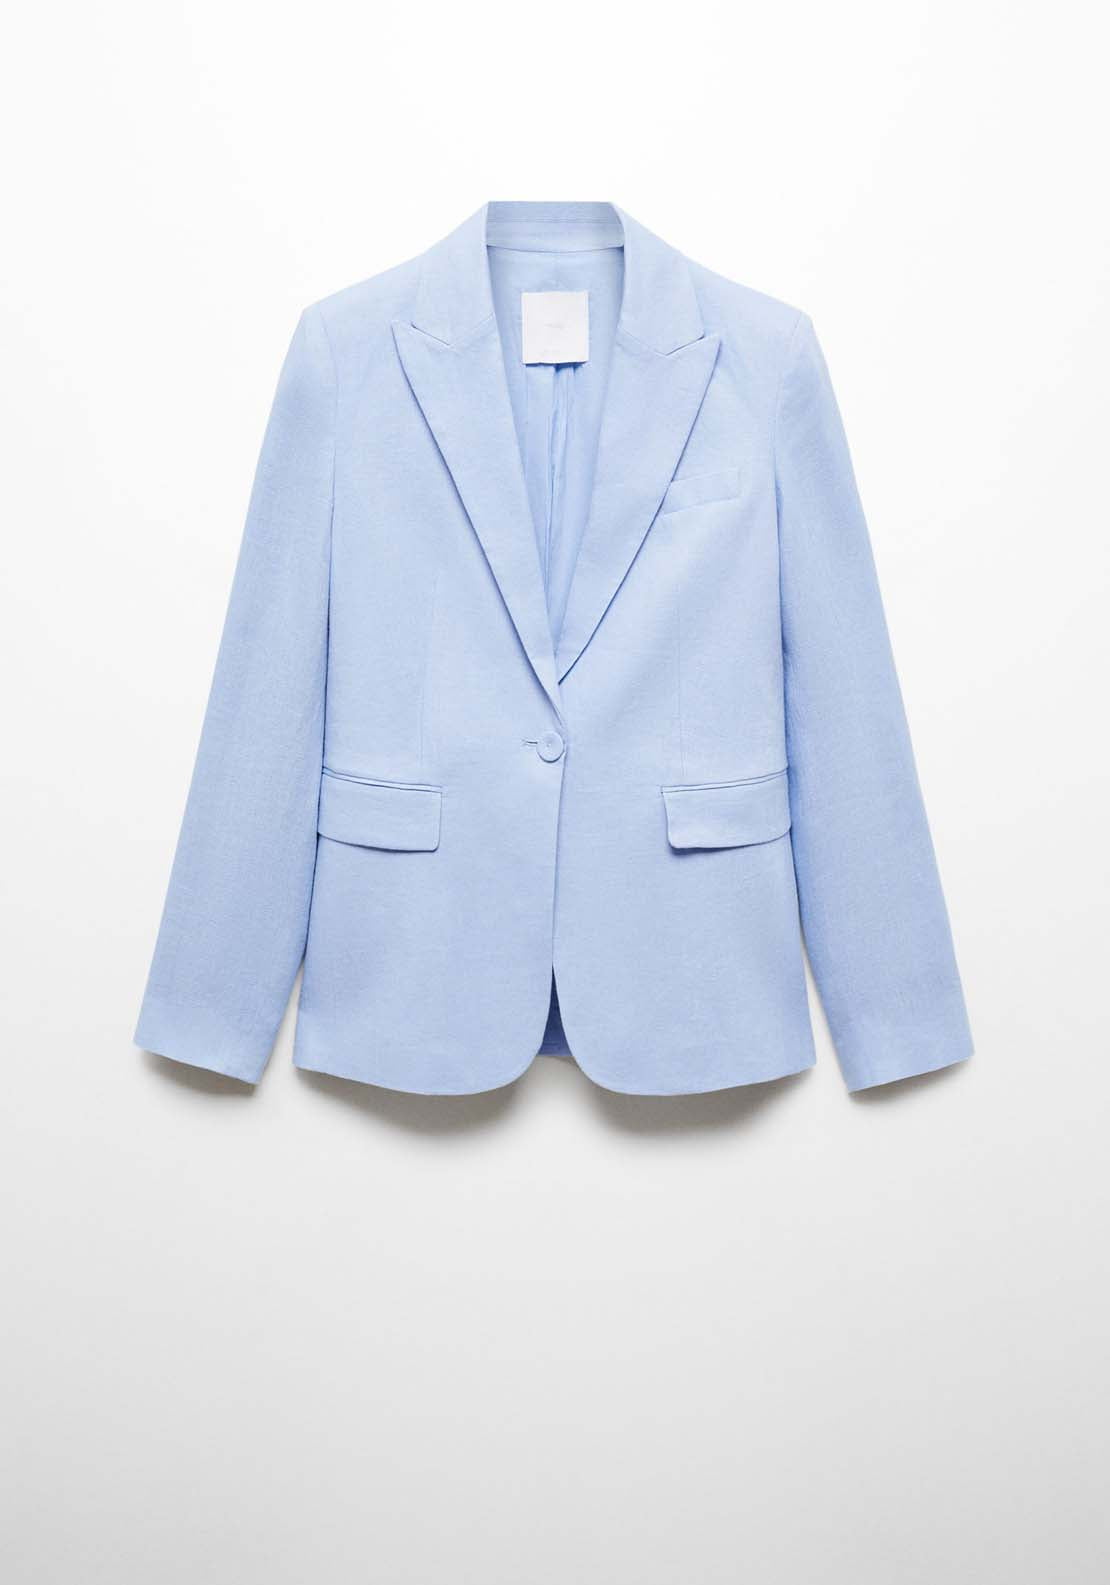 Mango Blazer suit 100% linen - Blue 6 Shaws Department Stores